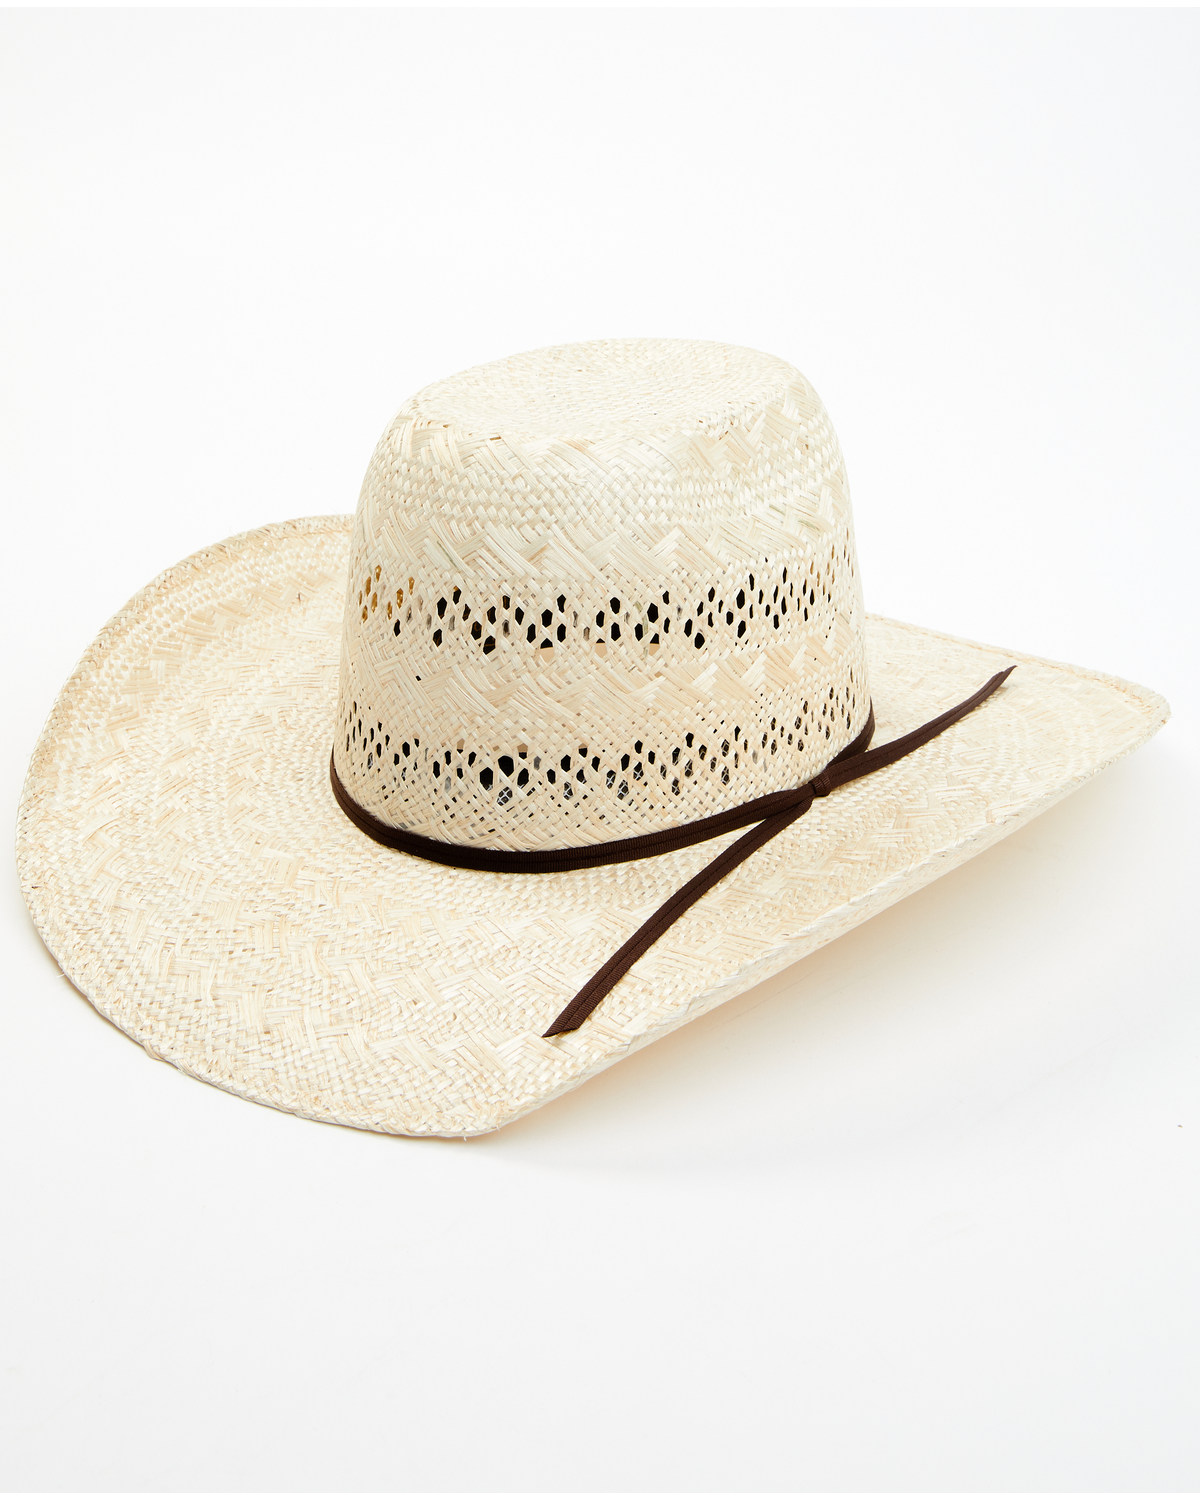 Rodeo King Ramie 25X Straw Cowboy Hat